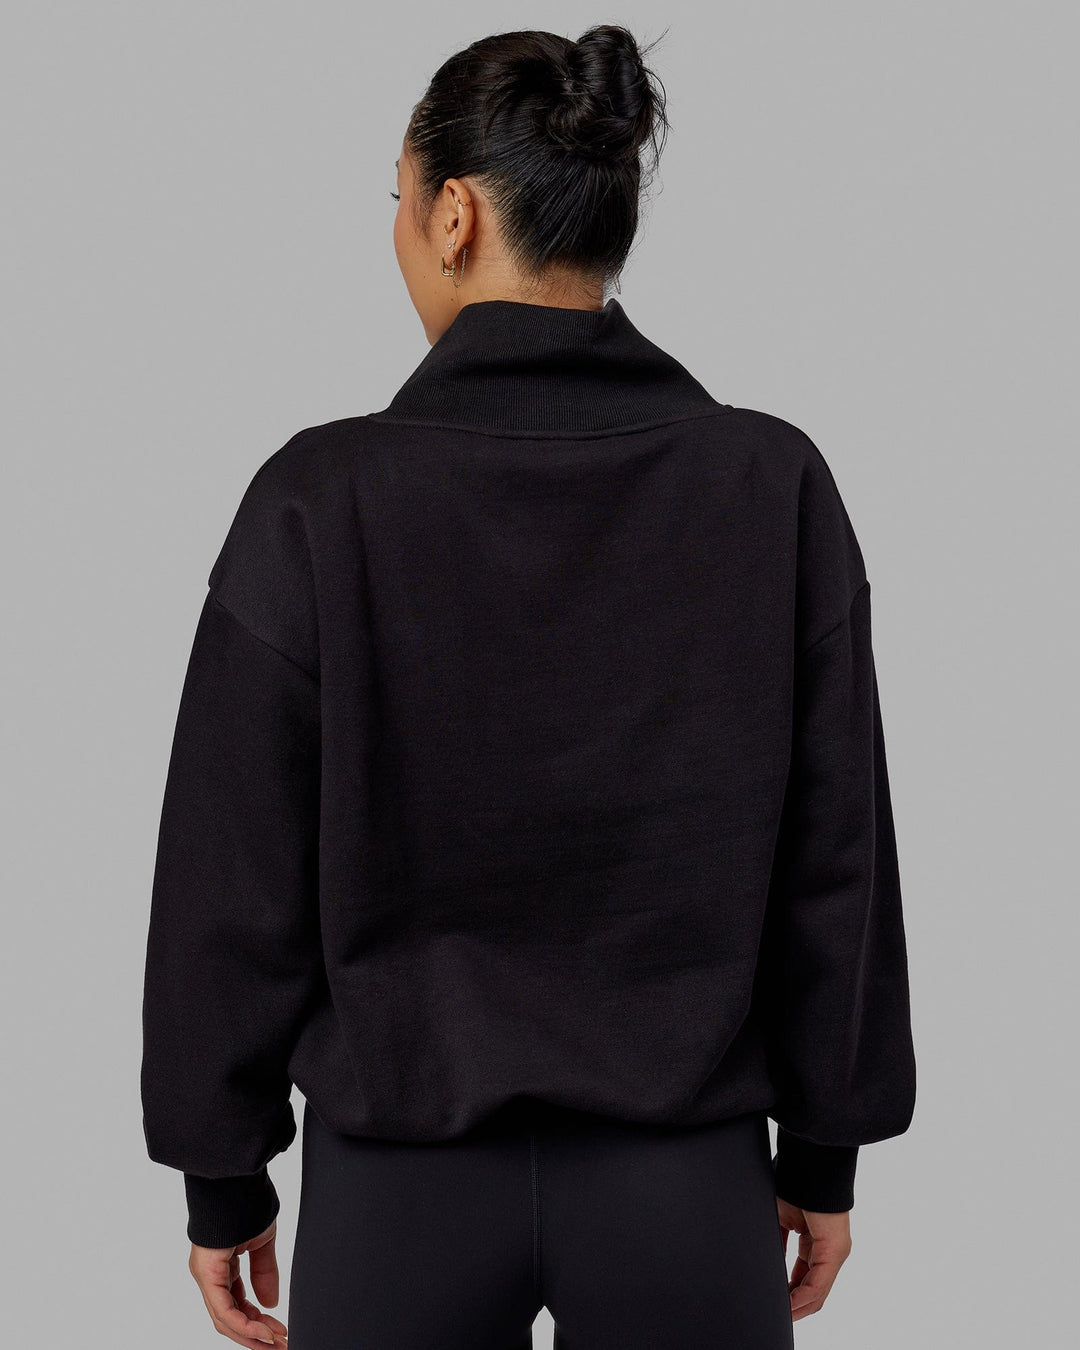 Woman wearing Wind Down FLXFleece 1/4 Zip Sweater - Black